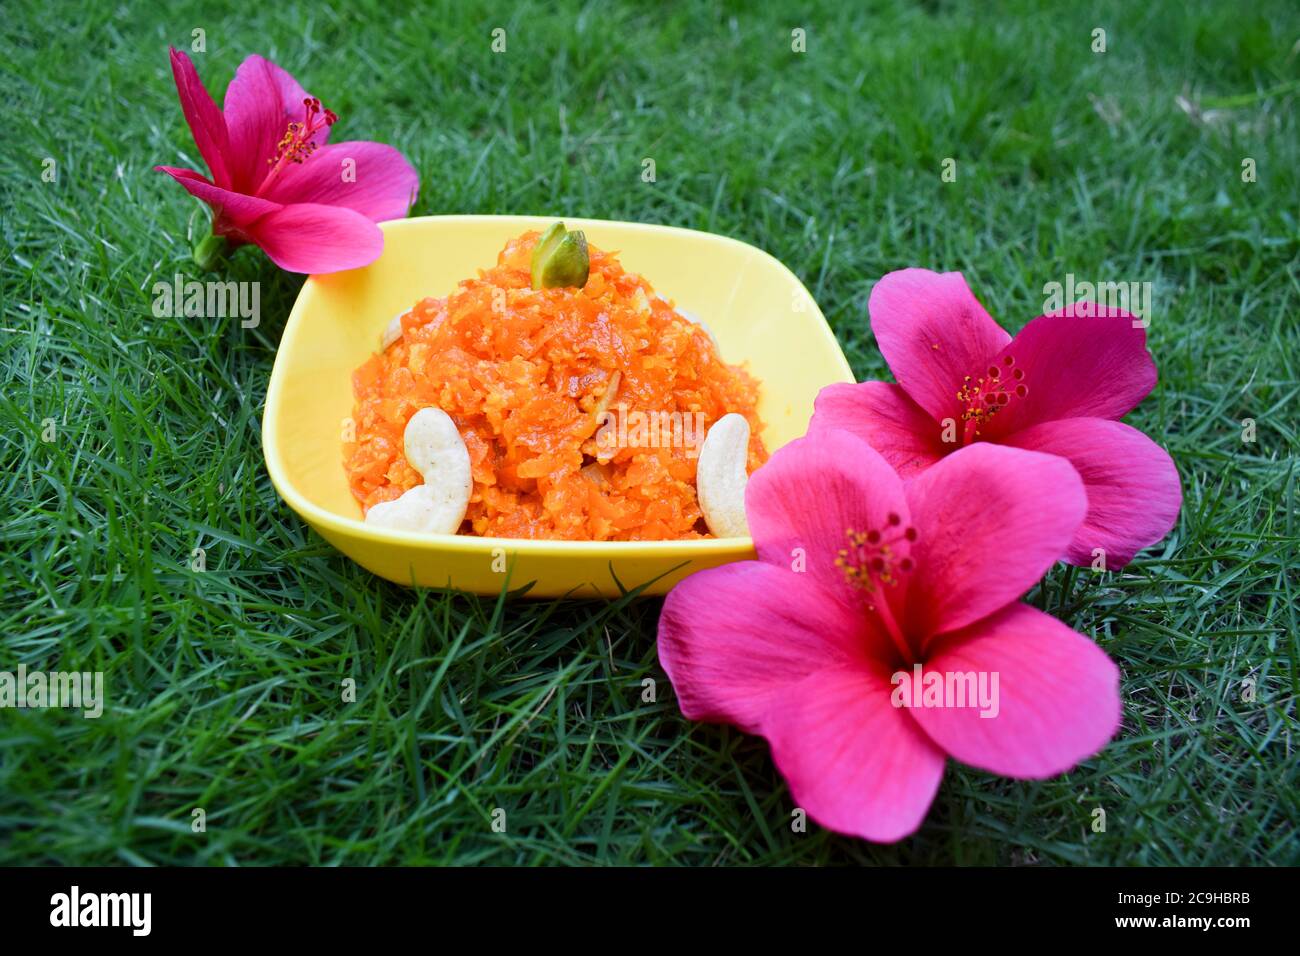 Gajar ka Halwa ist ein süßer Dessertpudding auf Karottenbasis in Indien und Pakistan. Garniert mit Cashewnüssen und Pistazien. Serviert in einer gelben Schüssel dekorat Stockfoto